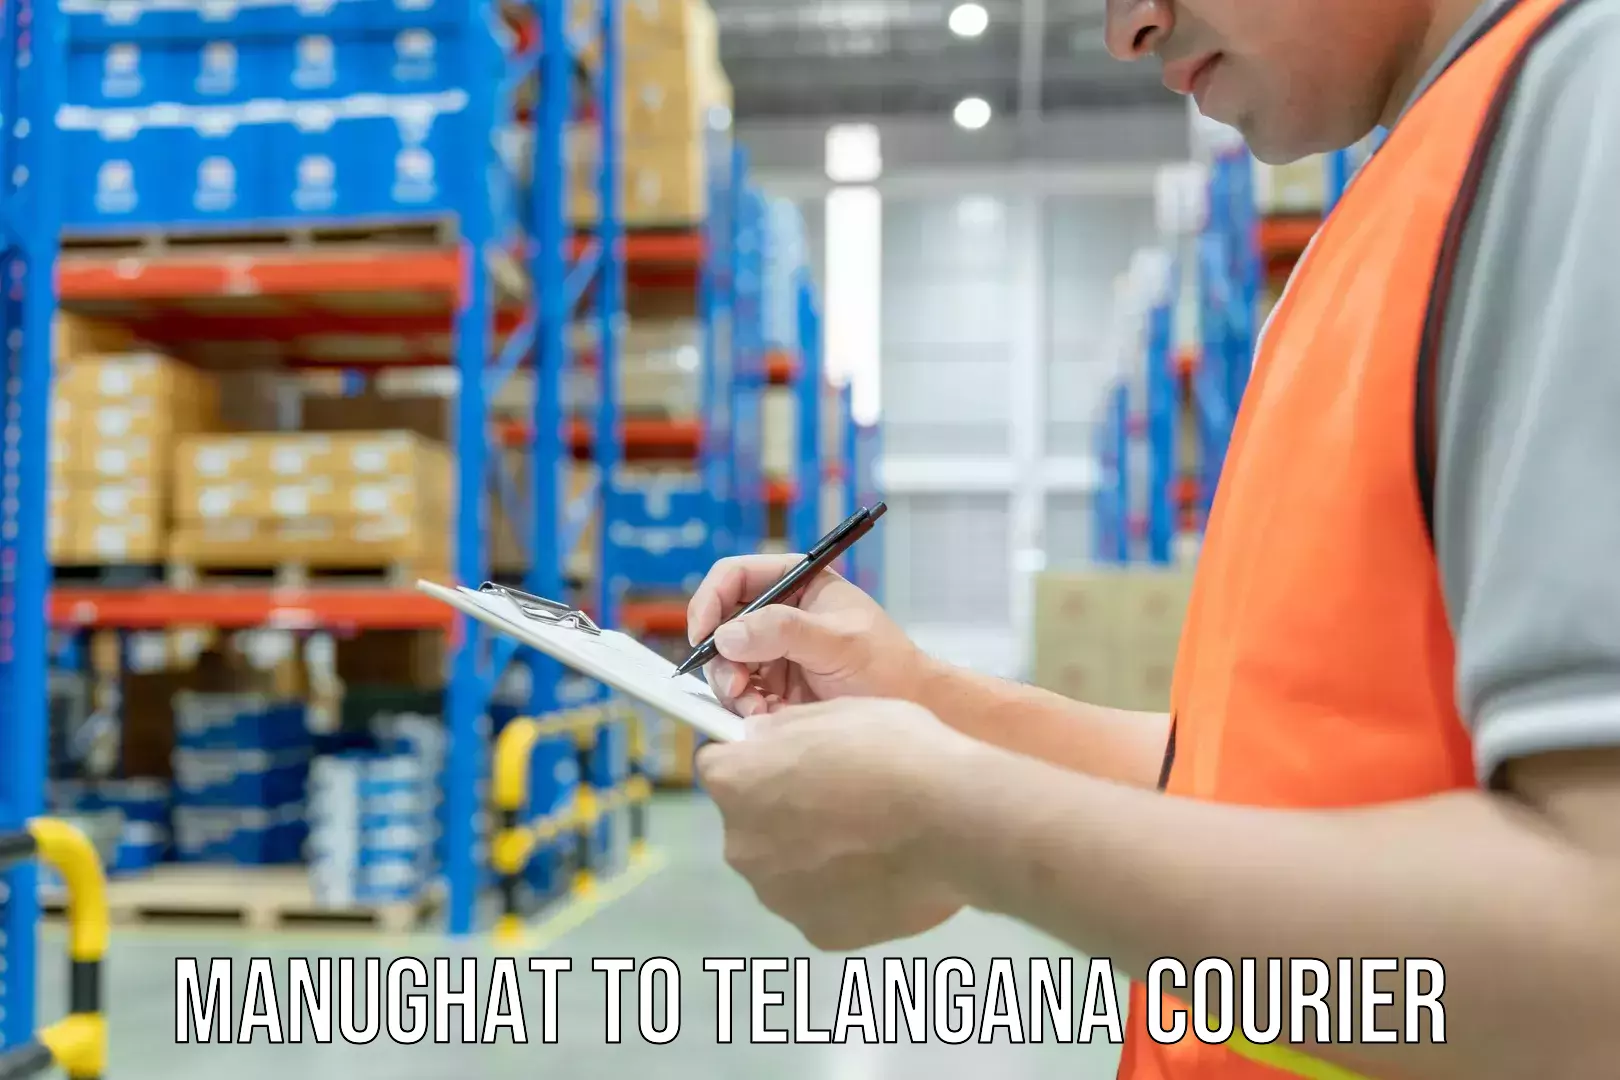 Bulk courier orders Manughat to Telangana